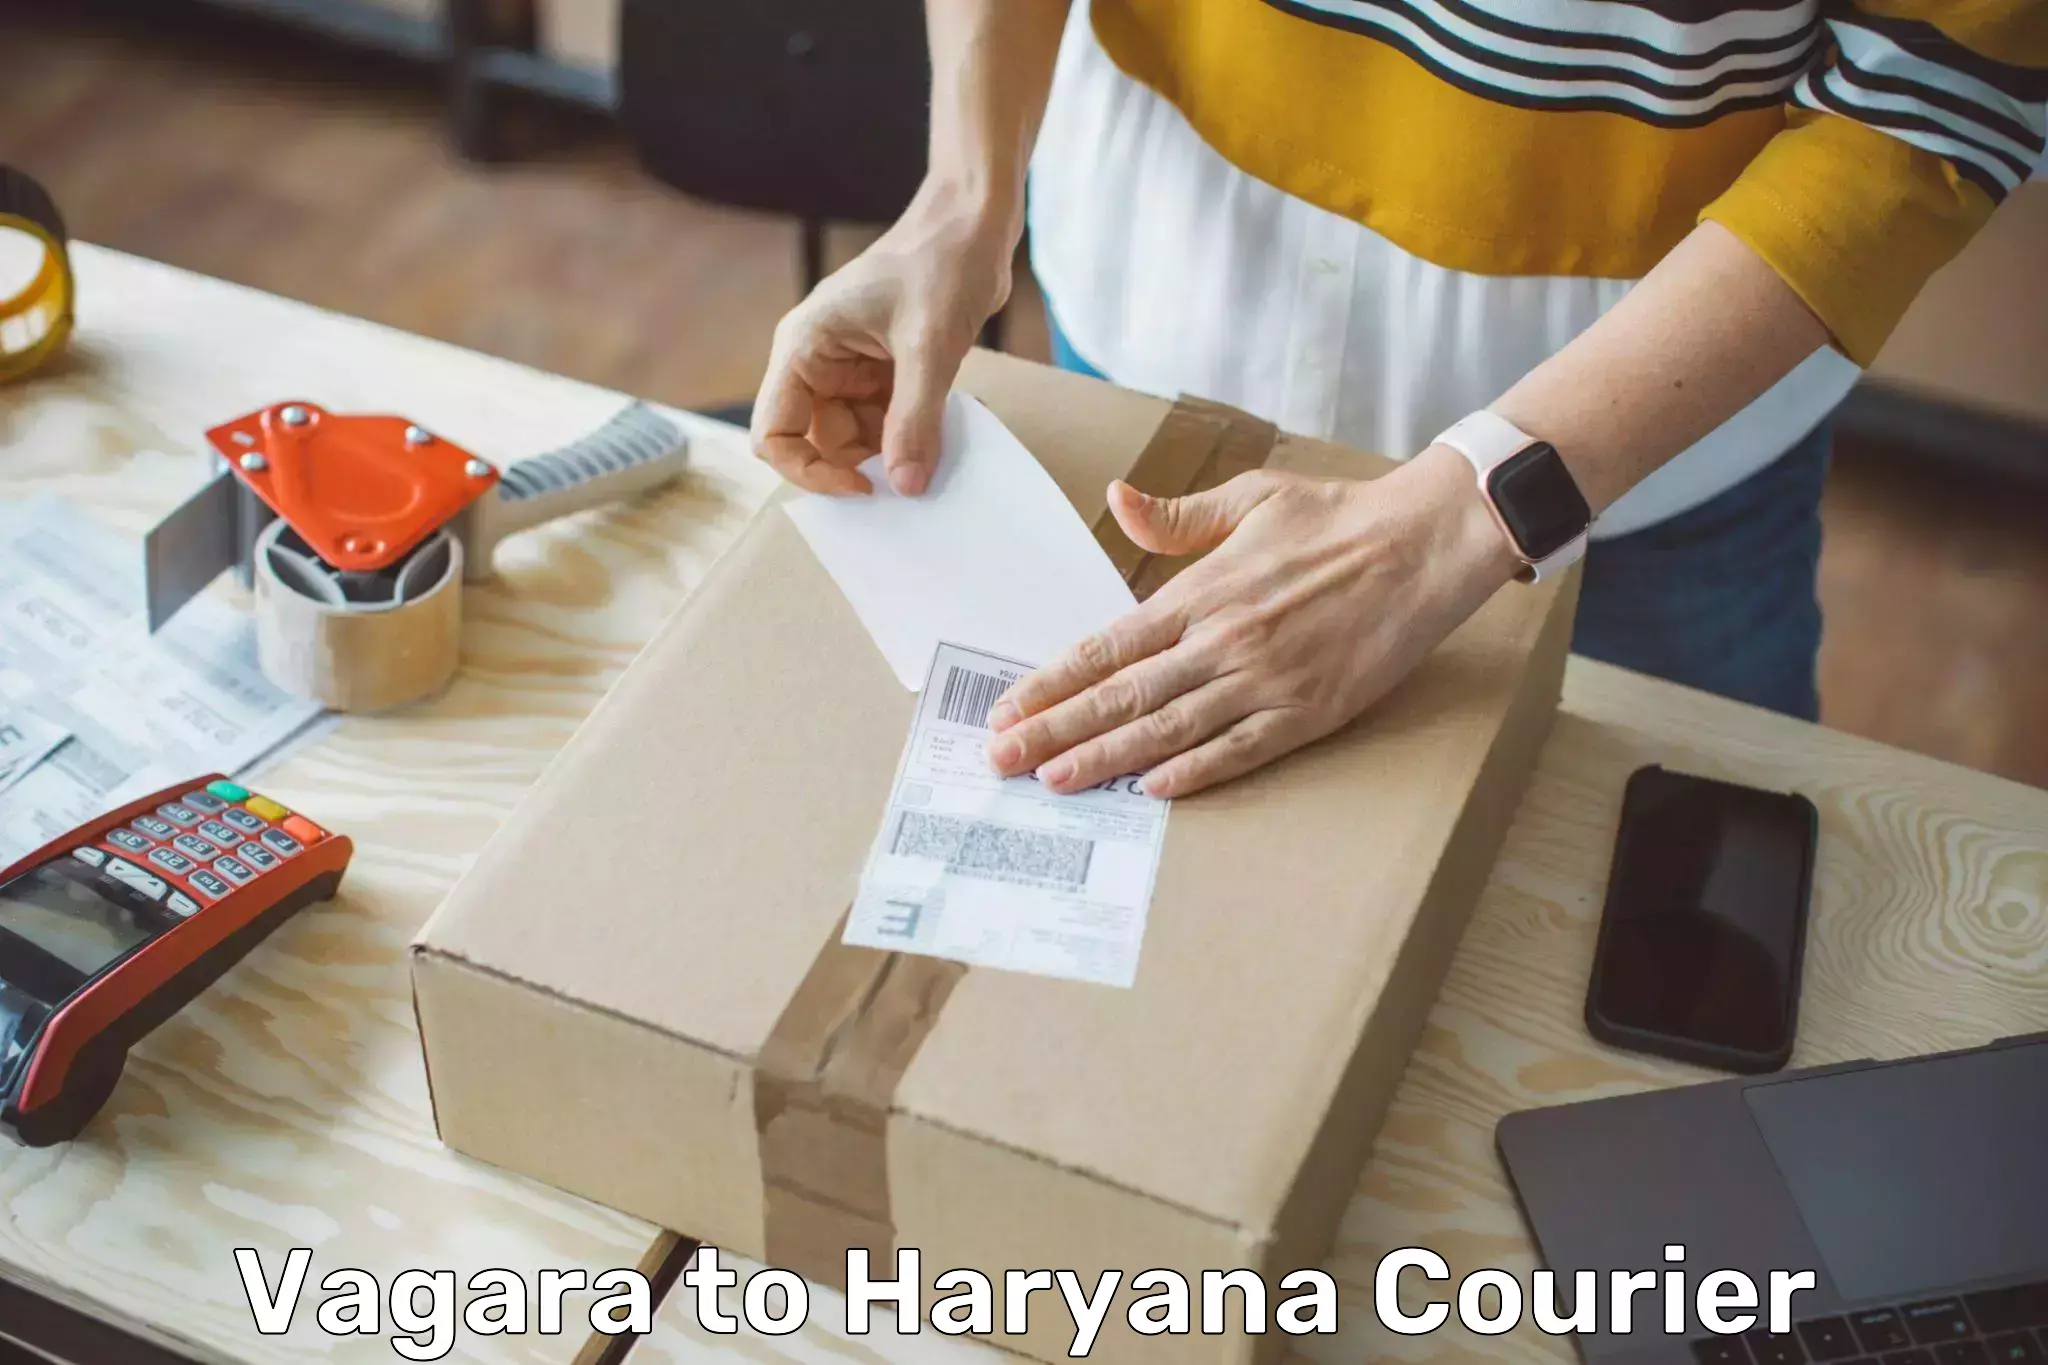 Door-to-door freight service Vagara to NCR Haryana